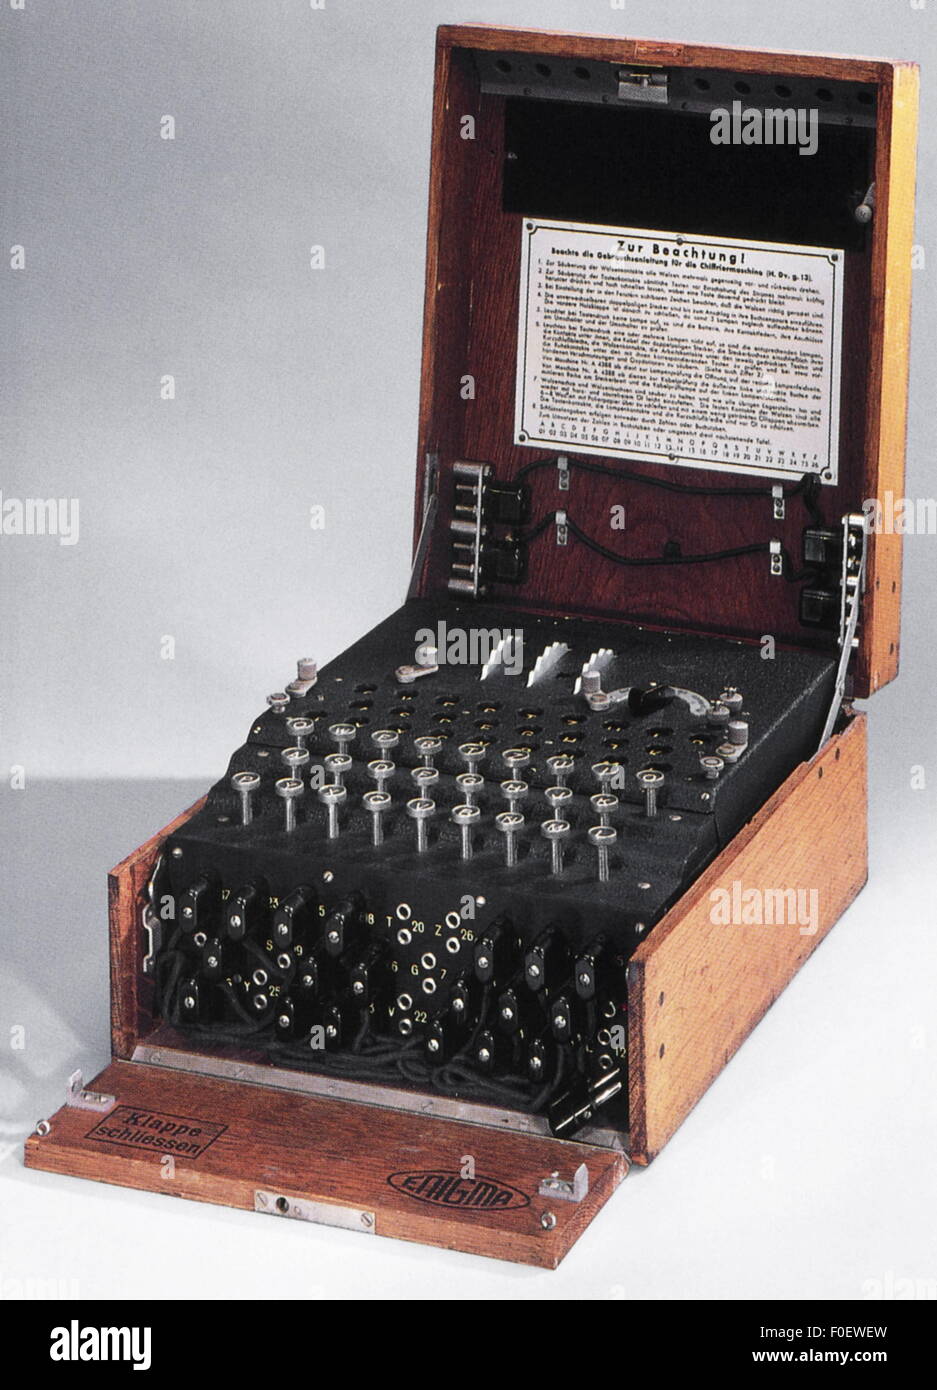 Spionage, deutsche 'Enigma'-Maschine, zur Ver- und Entschlüsselung von Geheimnachrichten, in Dienst 1923-1945, Additional-Rights-Clearences-nicht verfügbar Stockfoto